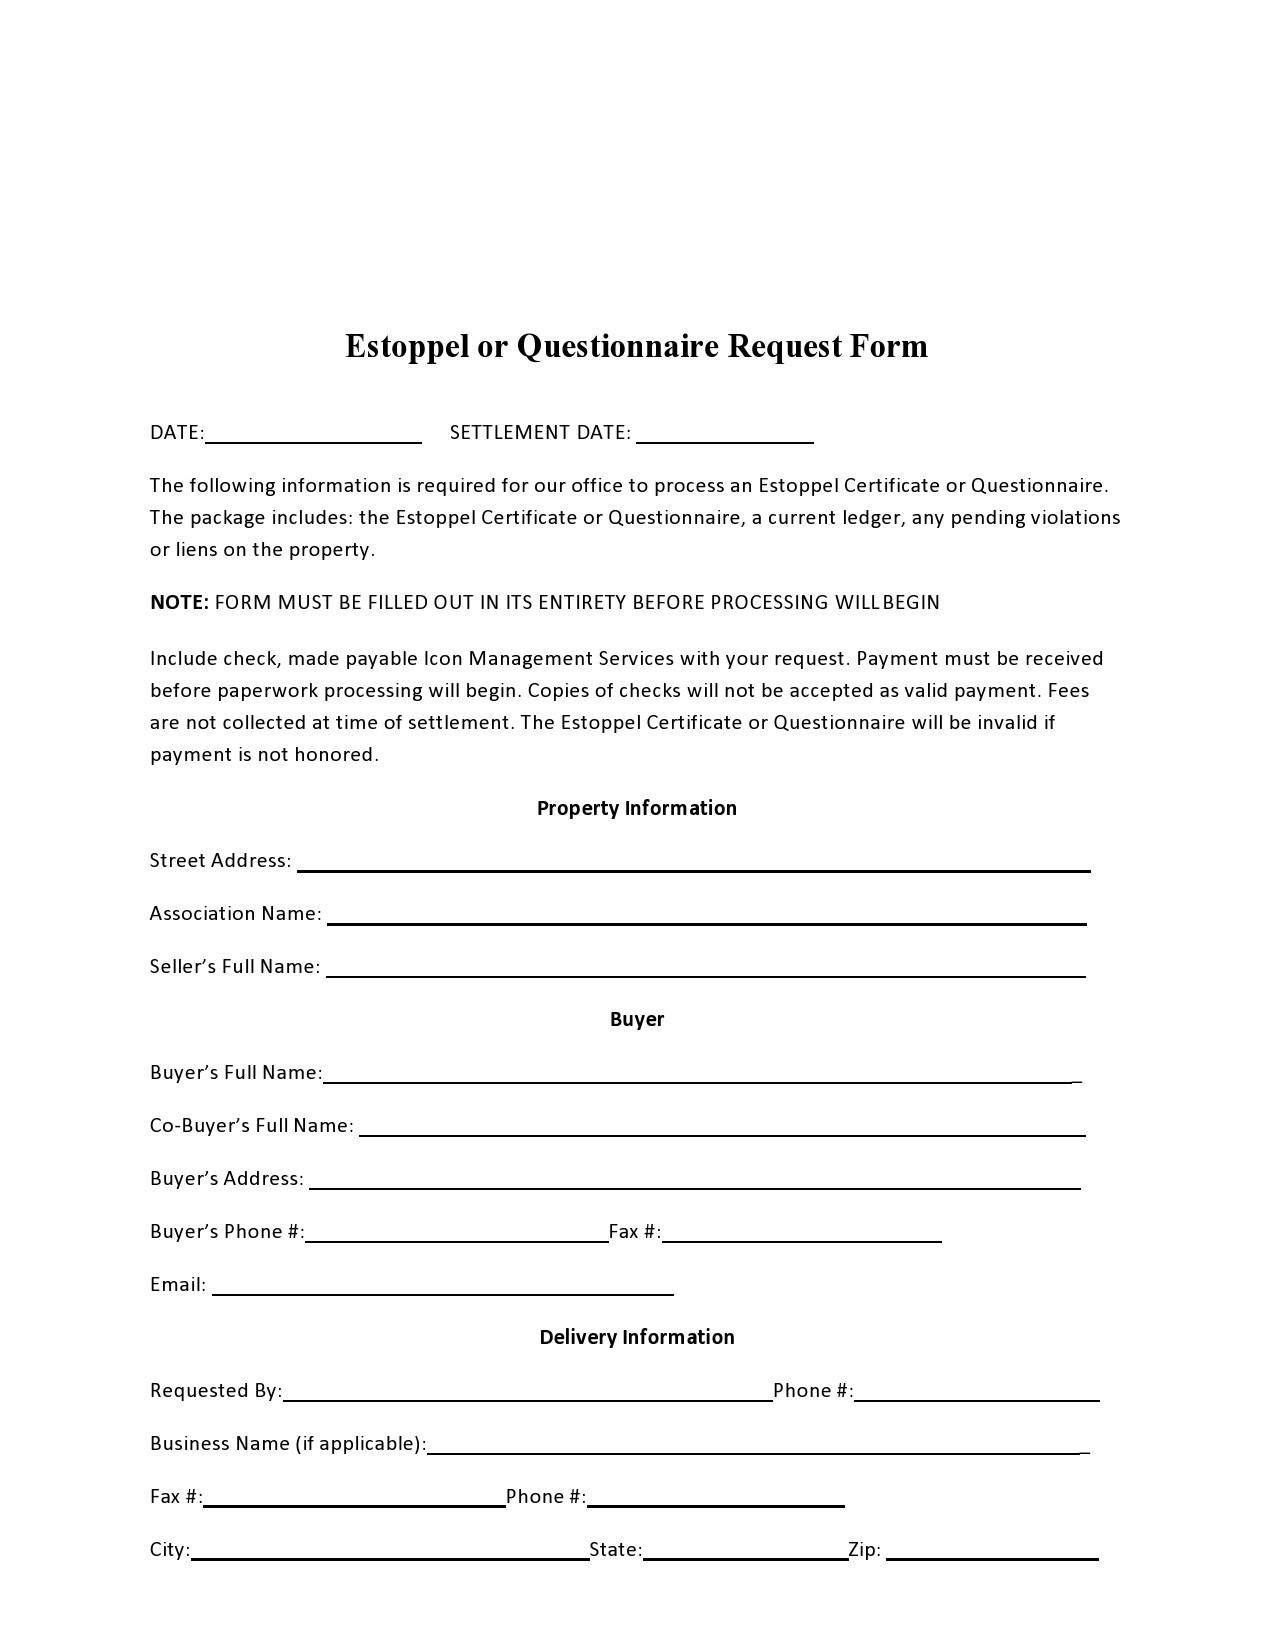 Free estoppel certificate form 26